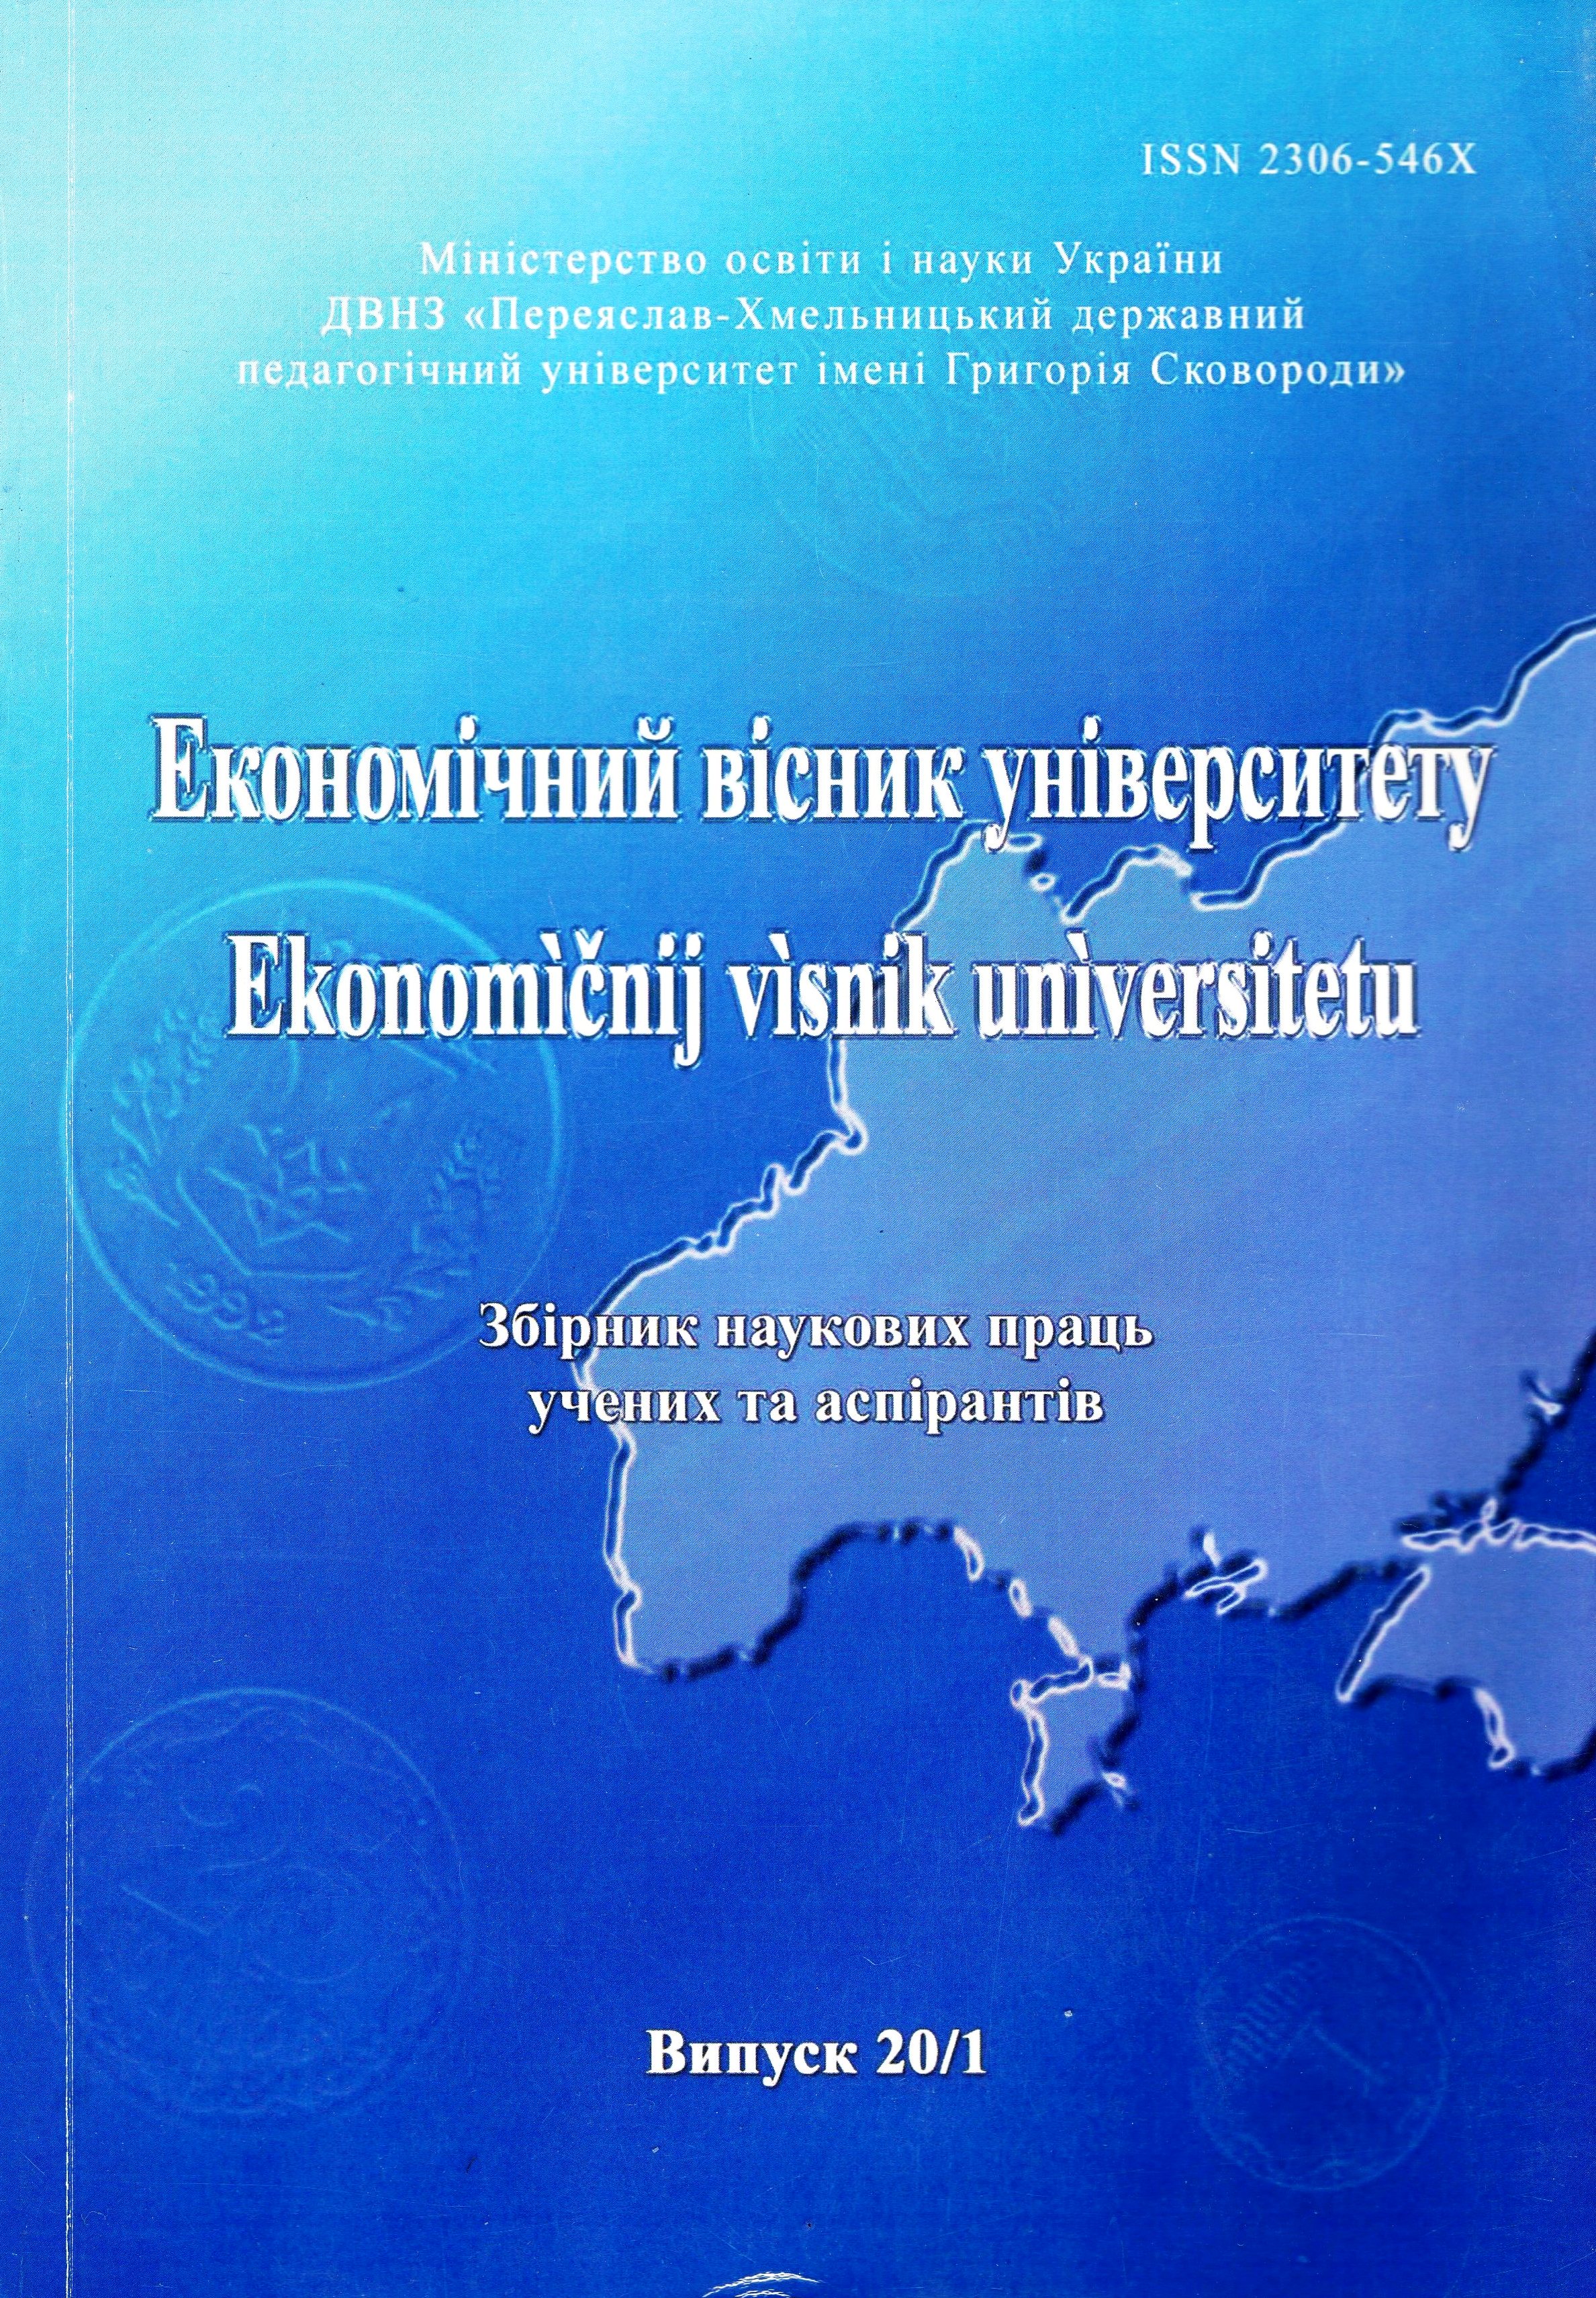 Міжнародна конкурентоспроможність України: оцінка проблем та шляхи покращення конкурентних позицій